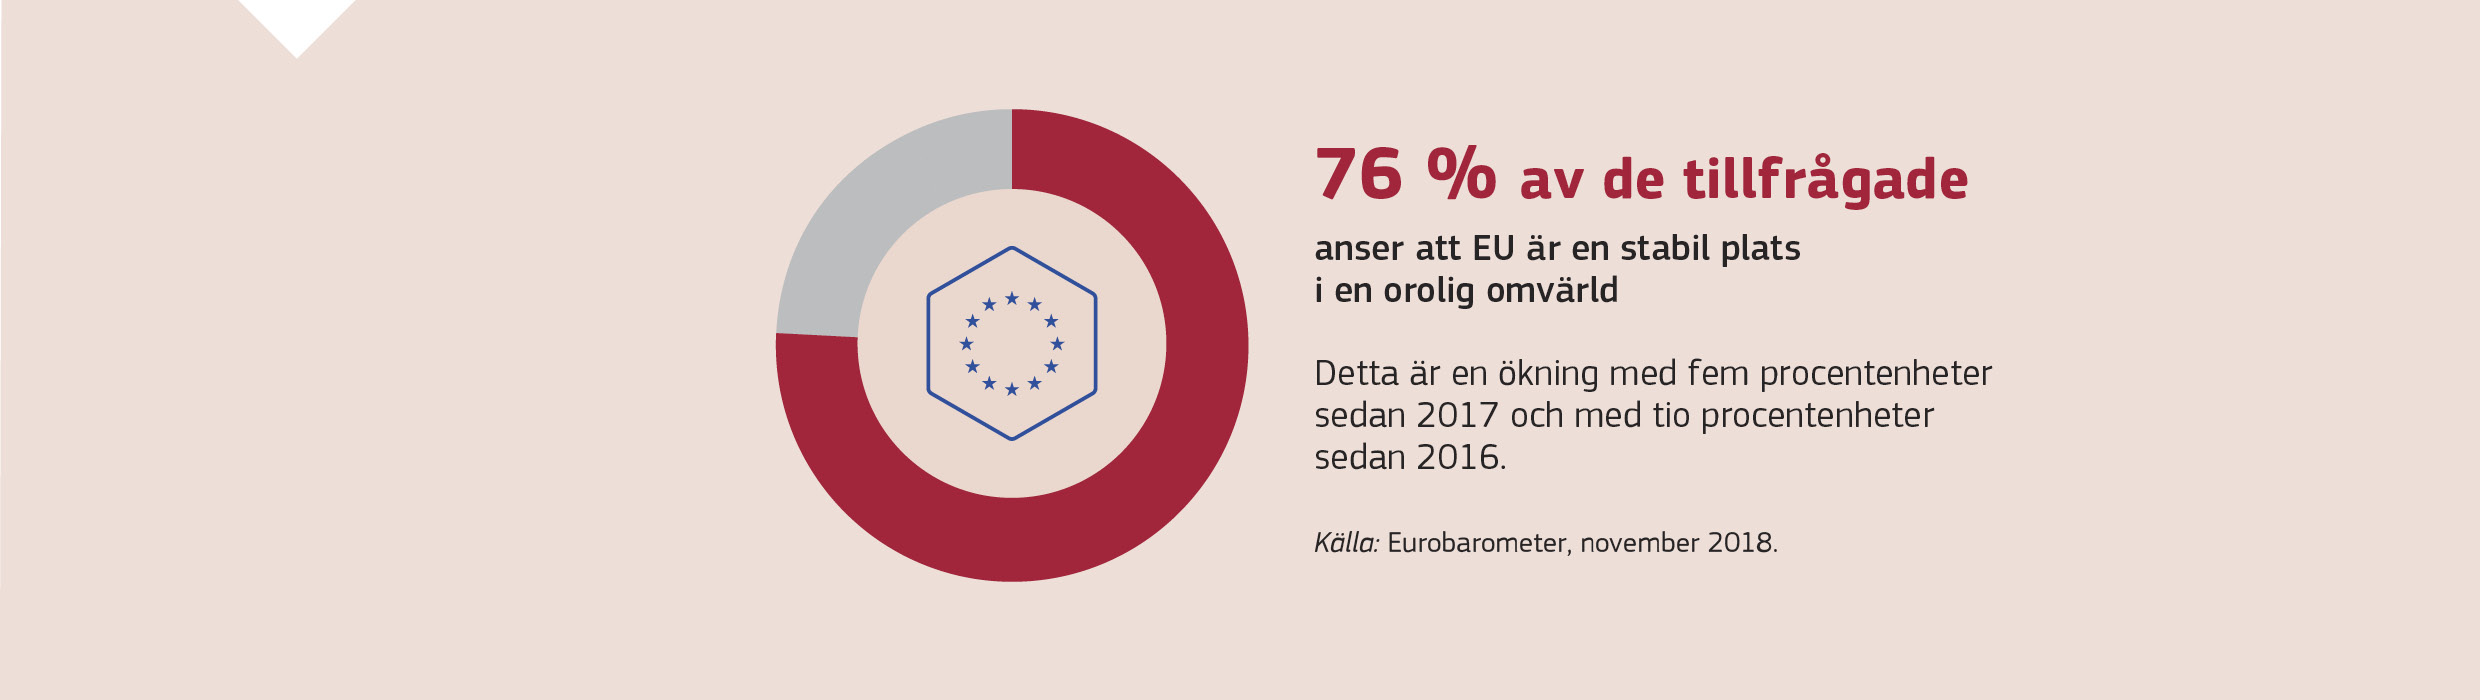 76 % av de tillfrågadeanser att EU är en stabil plats i en orolig omvärld. Detta är en ökning med fem procentenheter sedan 2017 och med tio procentenheter sedan 2016.